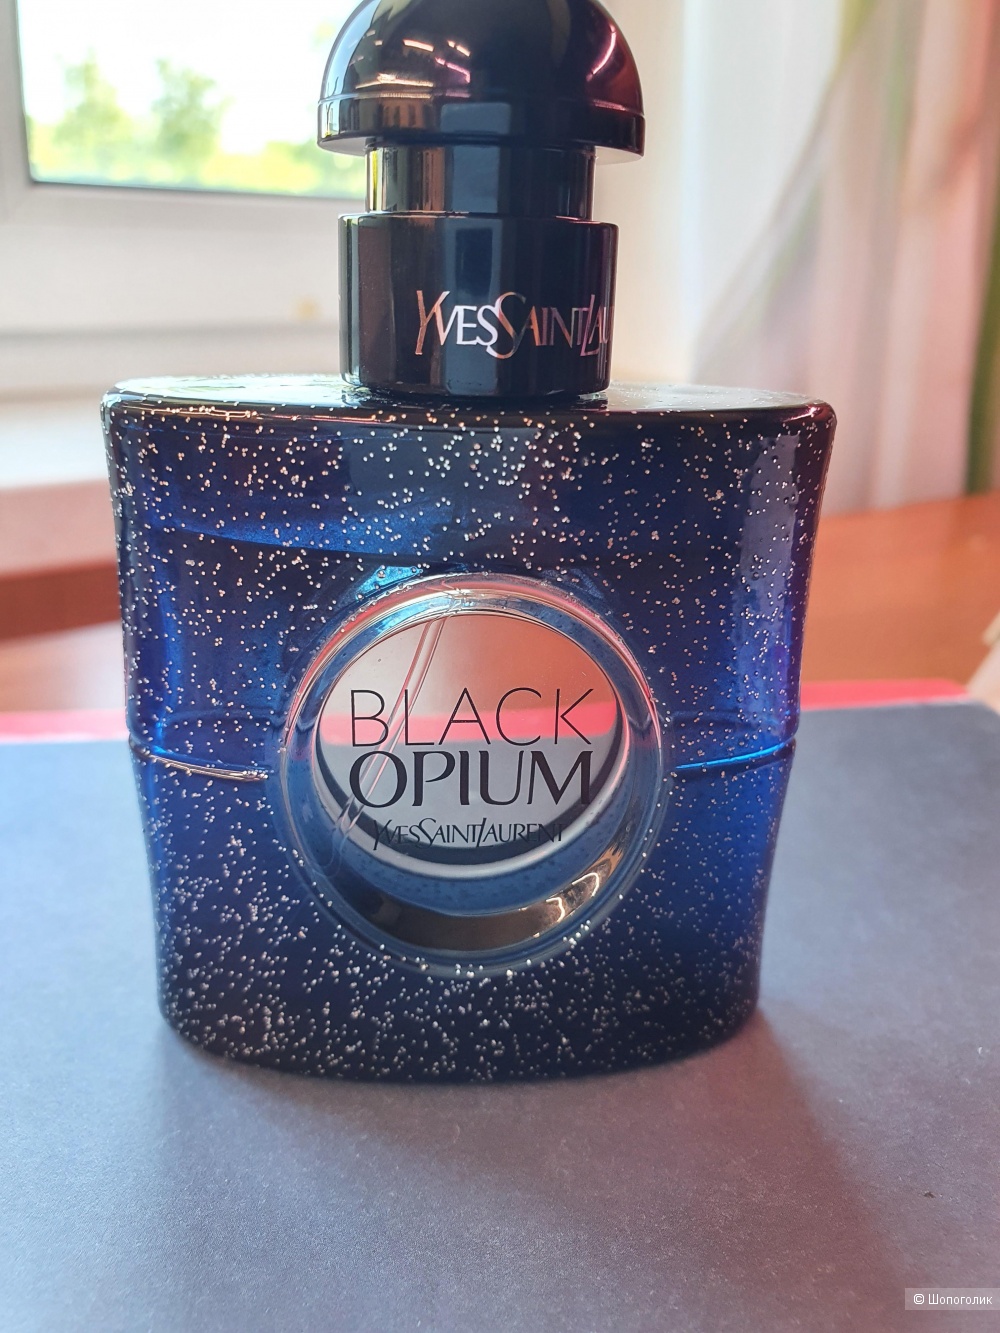 YSL Black Opium Eau De Parfum Intense